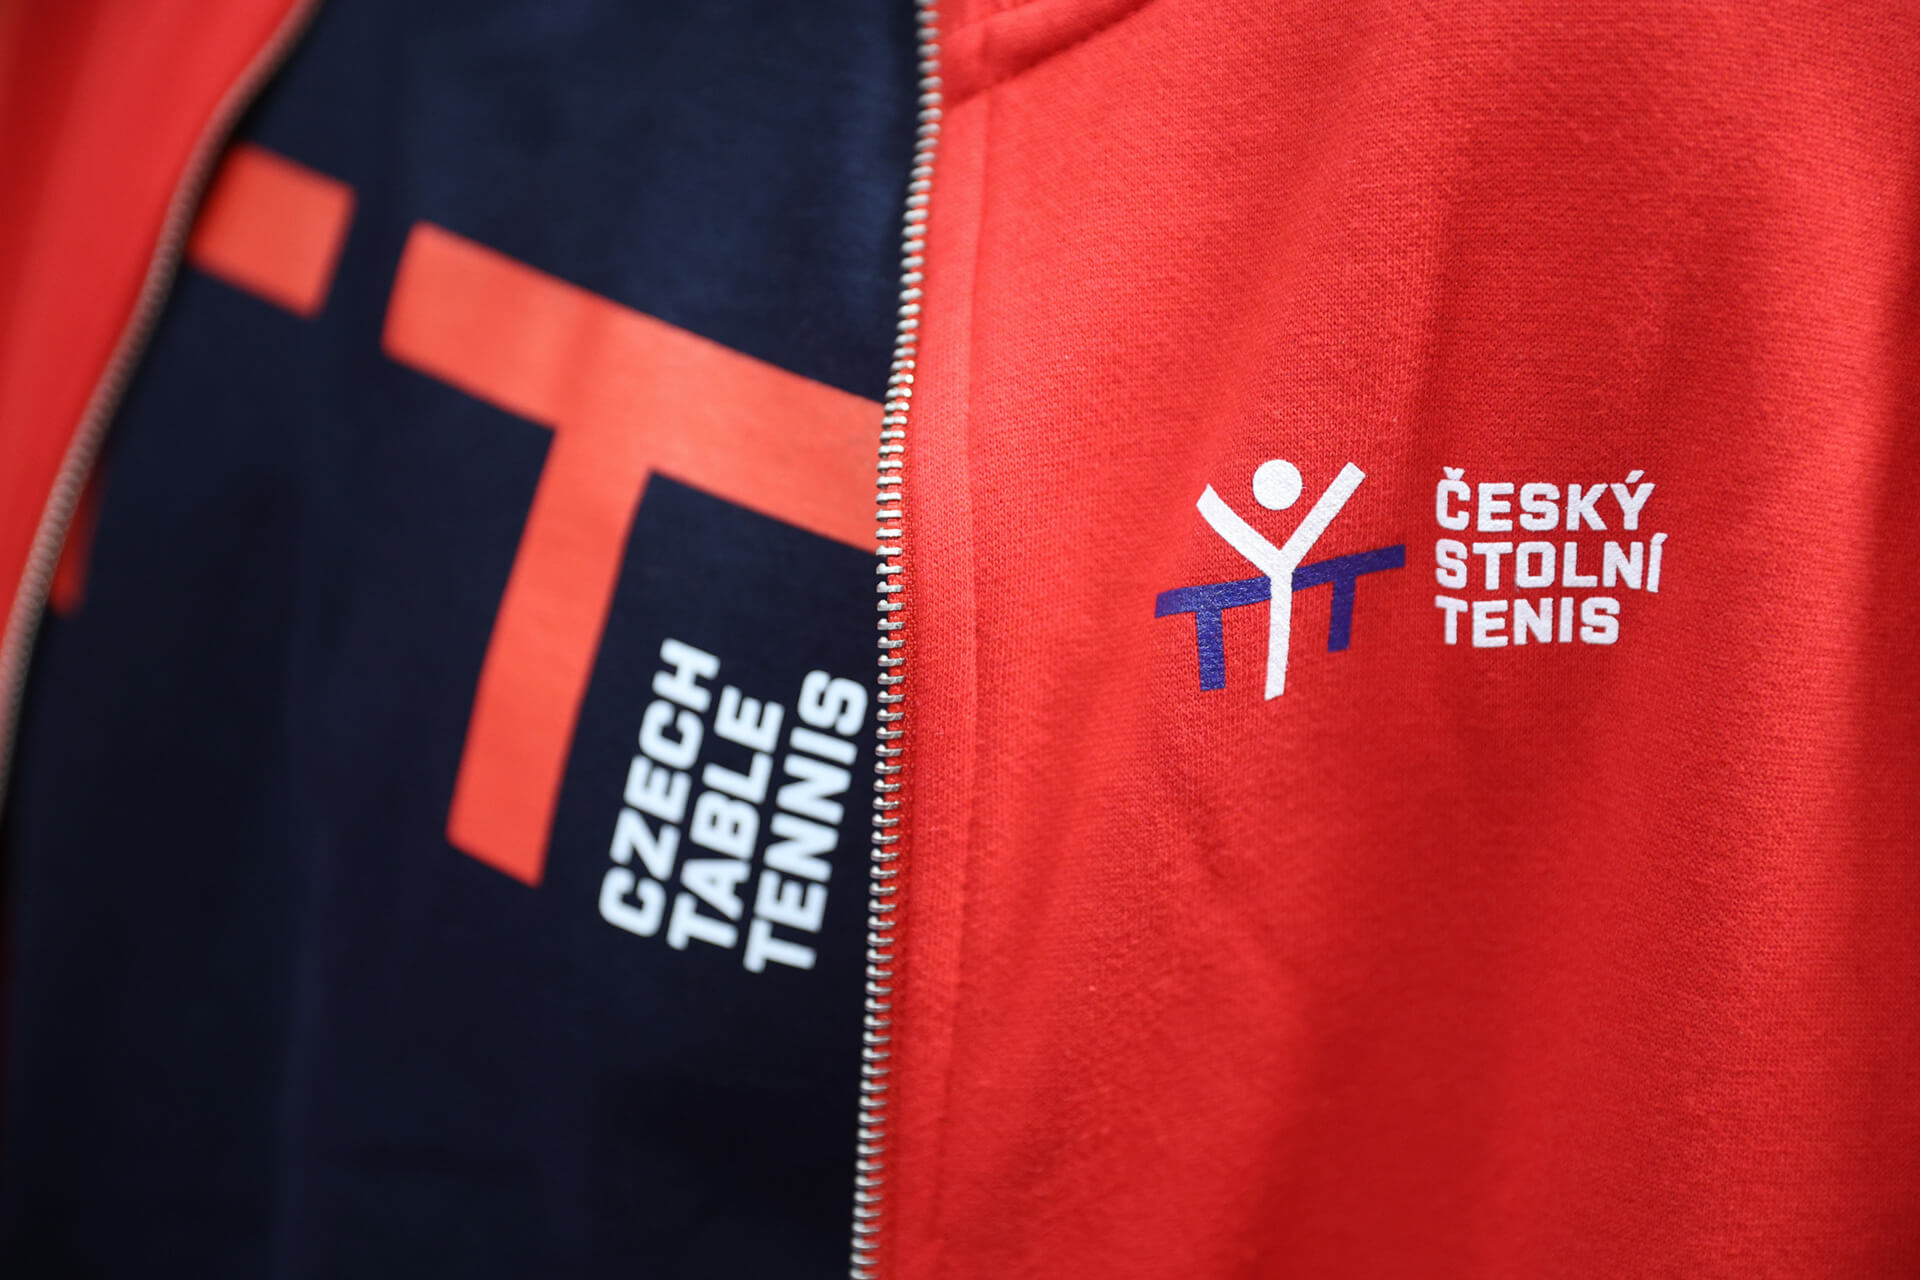 Sportovní oblečení s potiskem Českého stolního tenisu